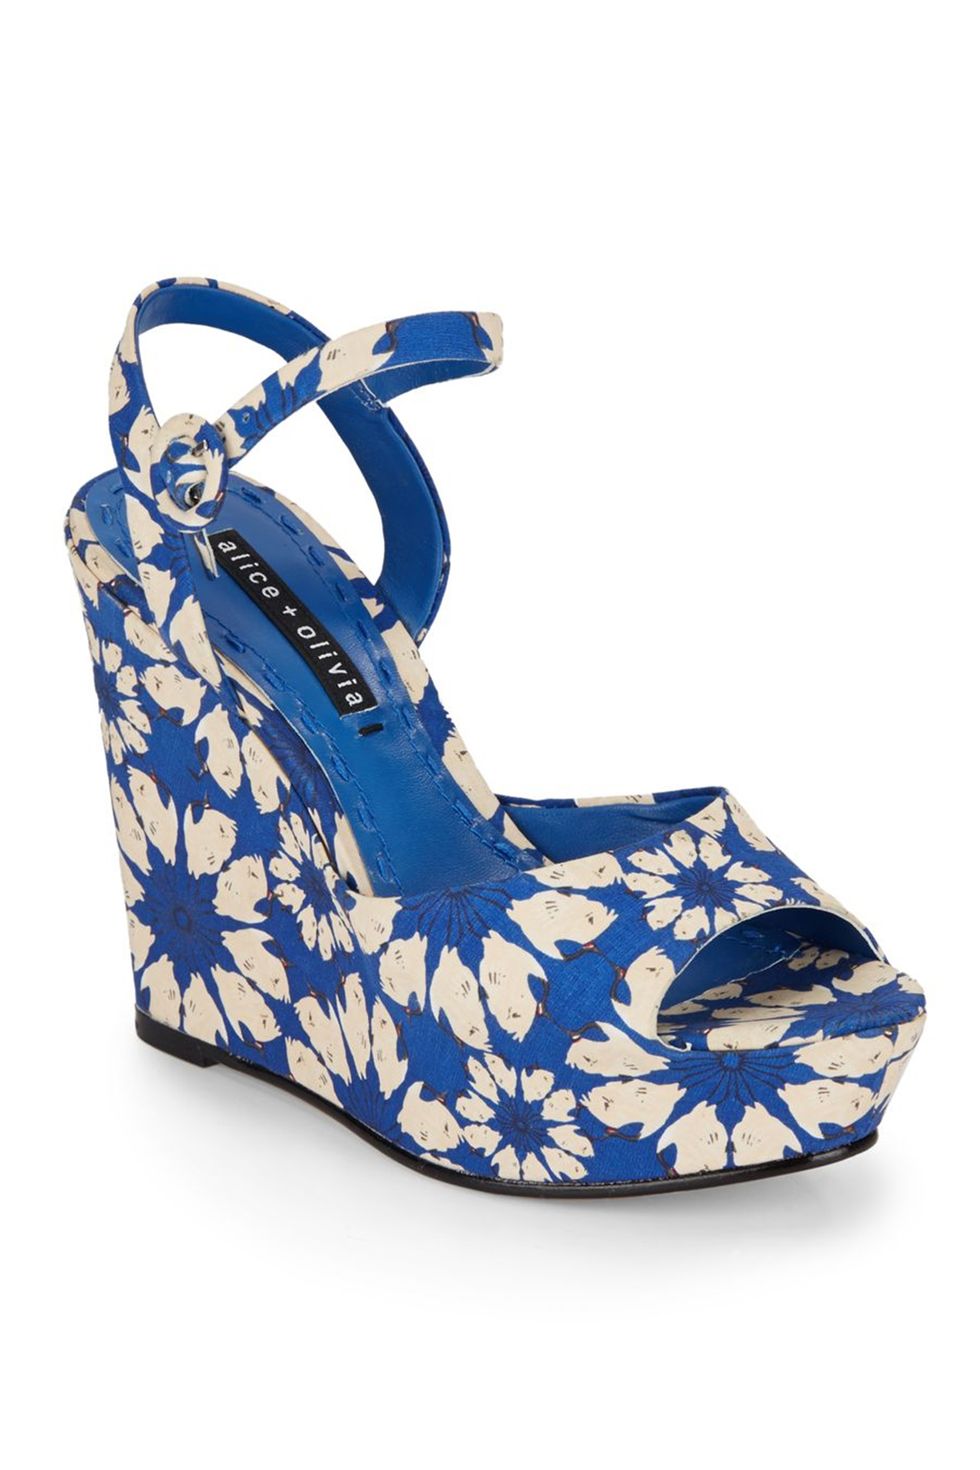 elle-splurge-alice-olivia-umbrella-blue-jenna-floral-print-platform-wedge-sandals-blue-product-3-561924185-normal